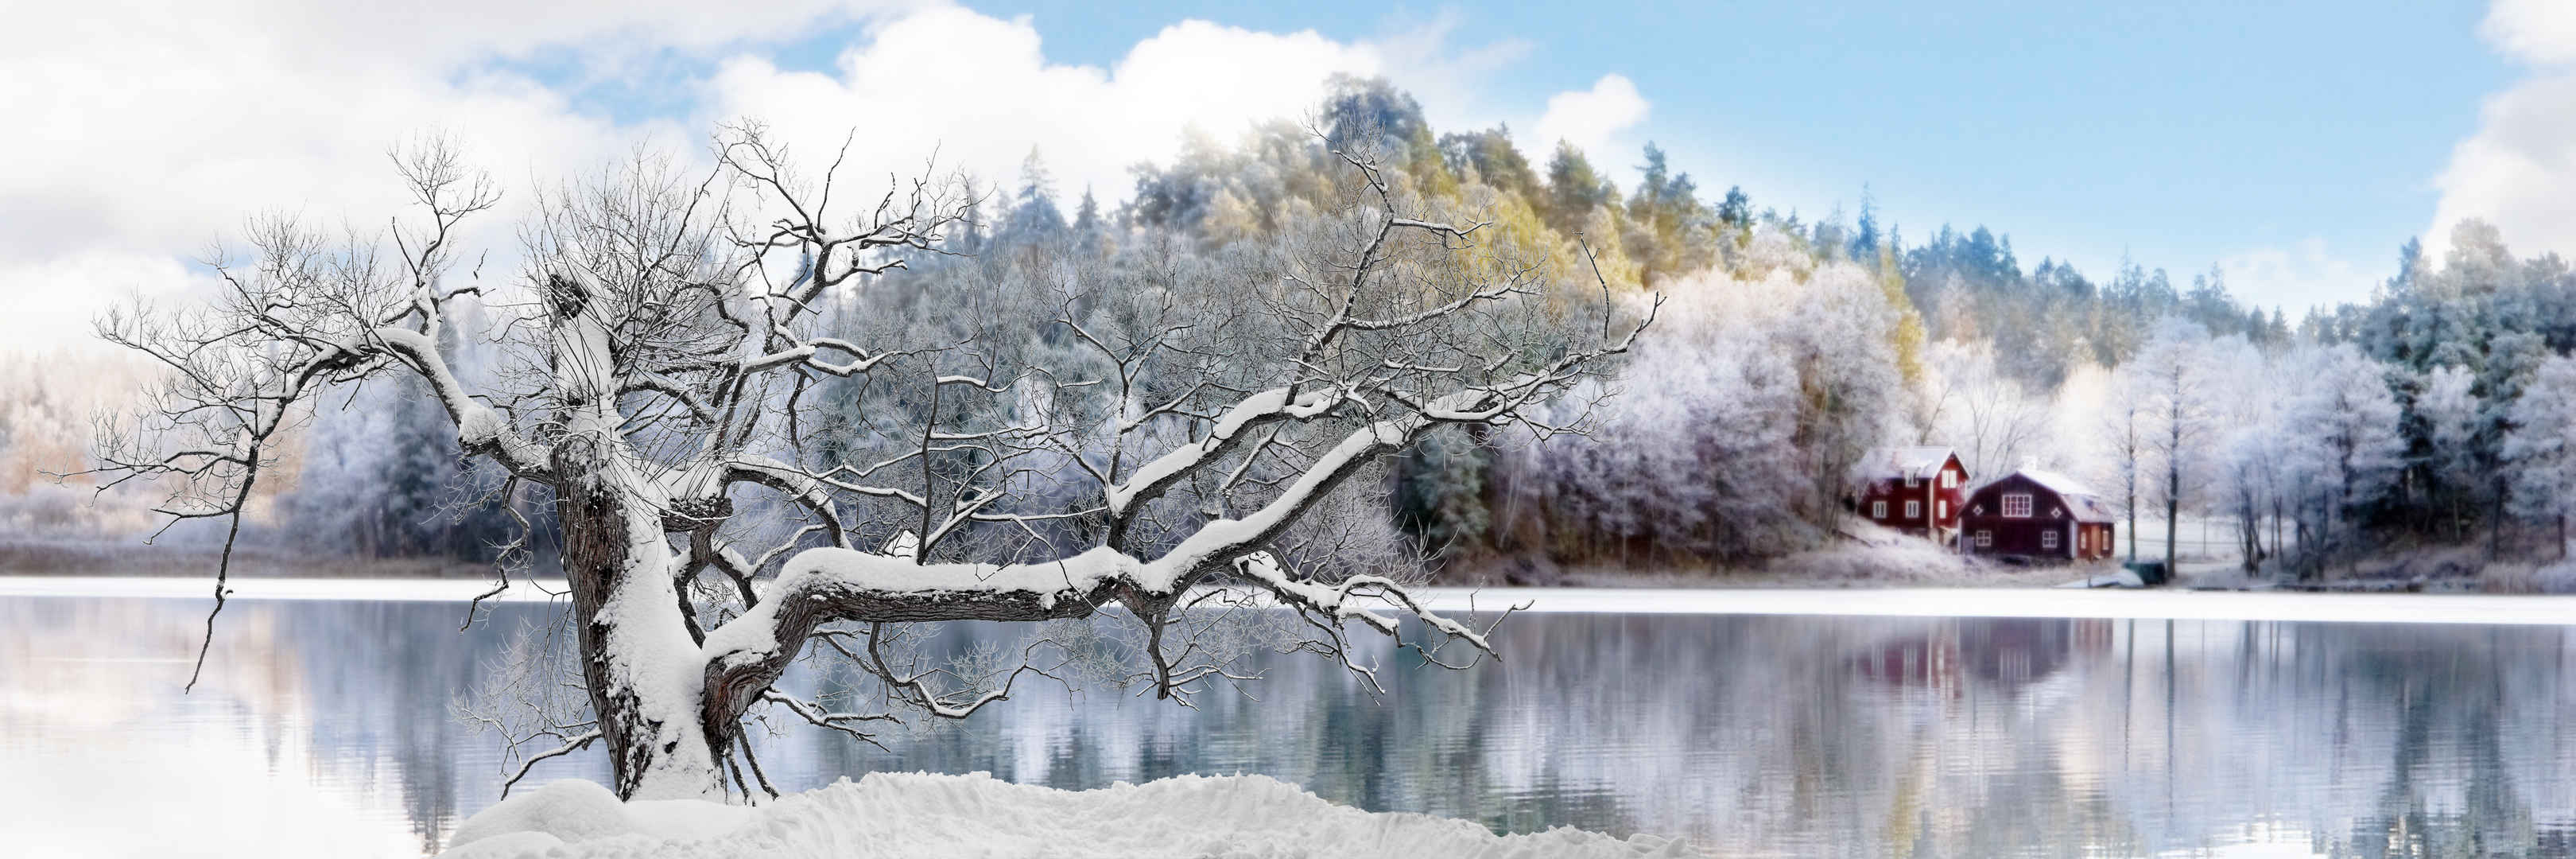 冬天寒冷老树挂雪壁纸图片-